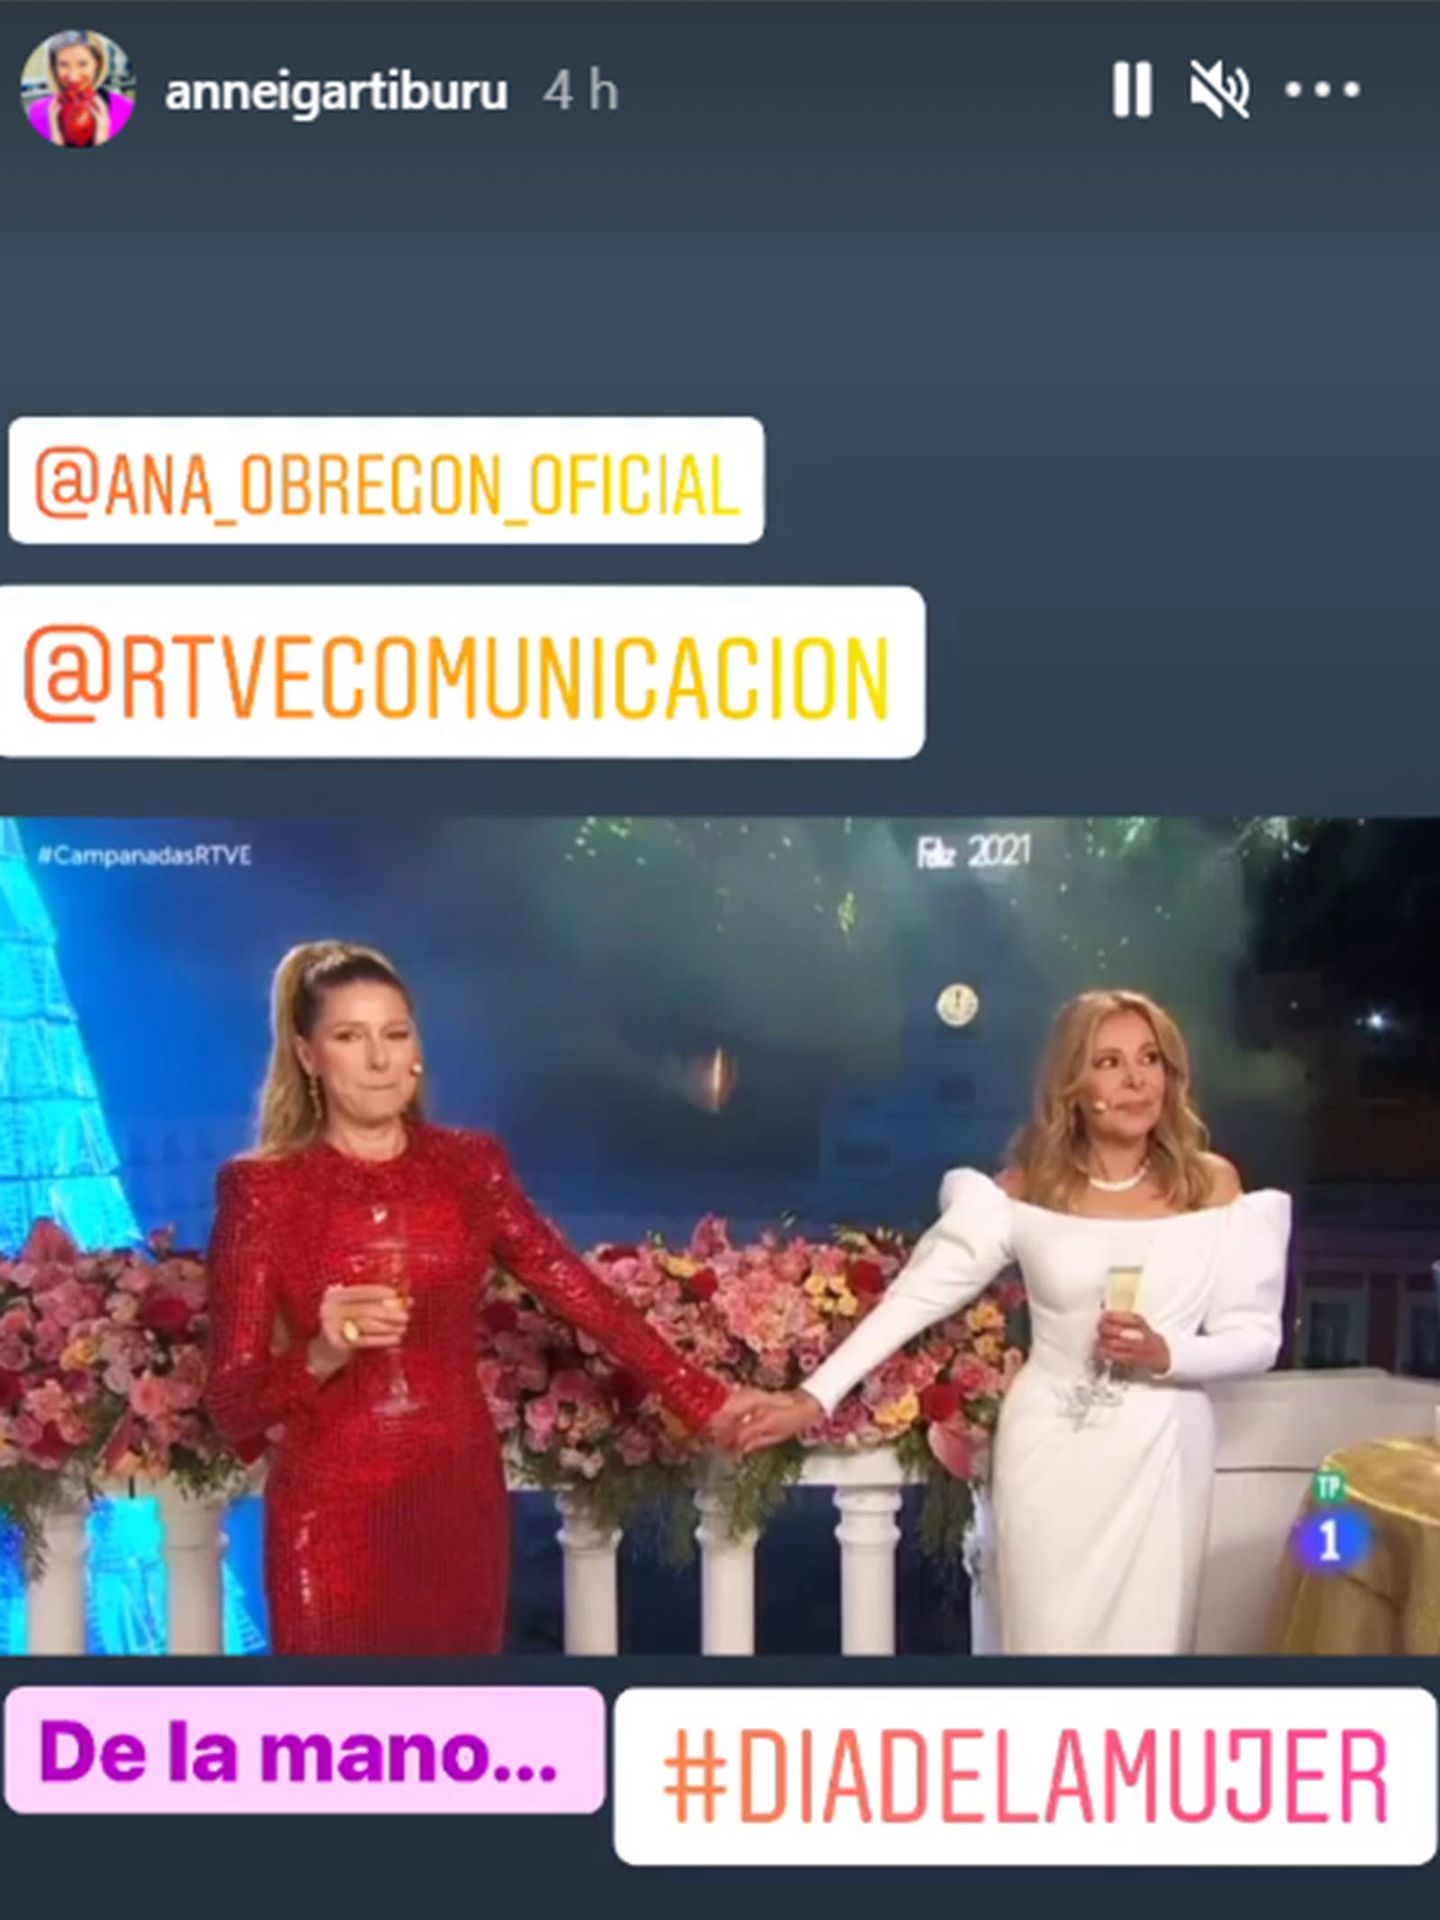 Anne Igartiburu ha querido recordar las campanadas junto a Ana Obregón en este 8-M. (Instagram @anneigartiburu)